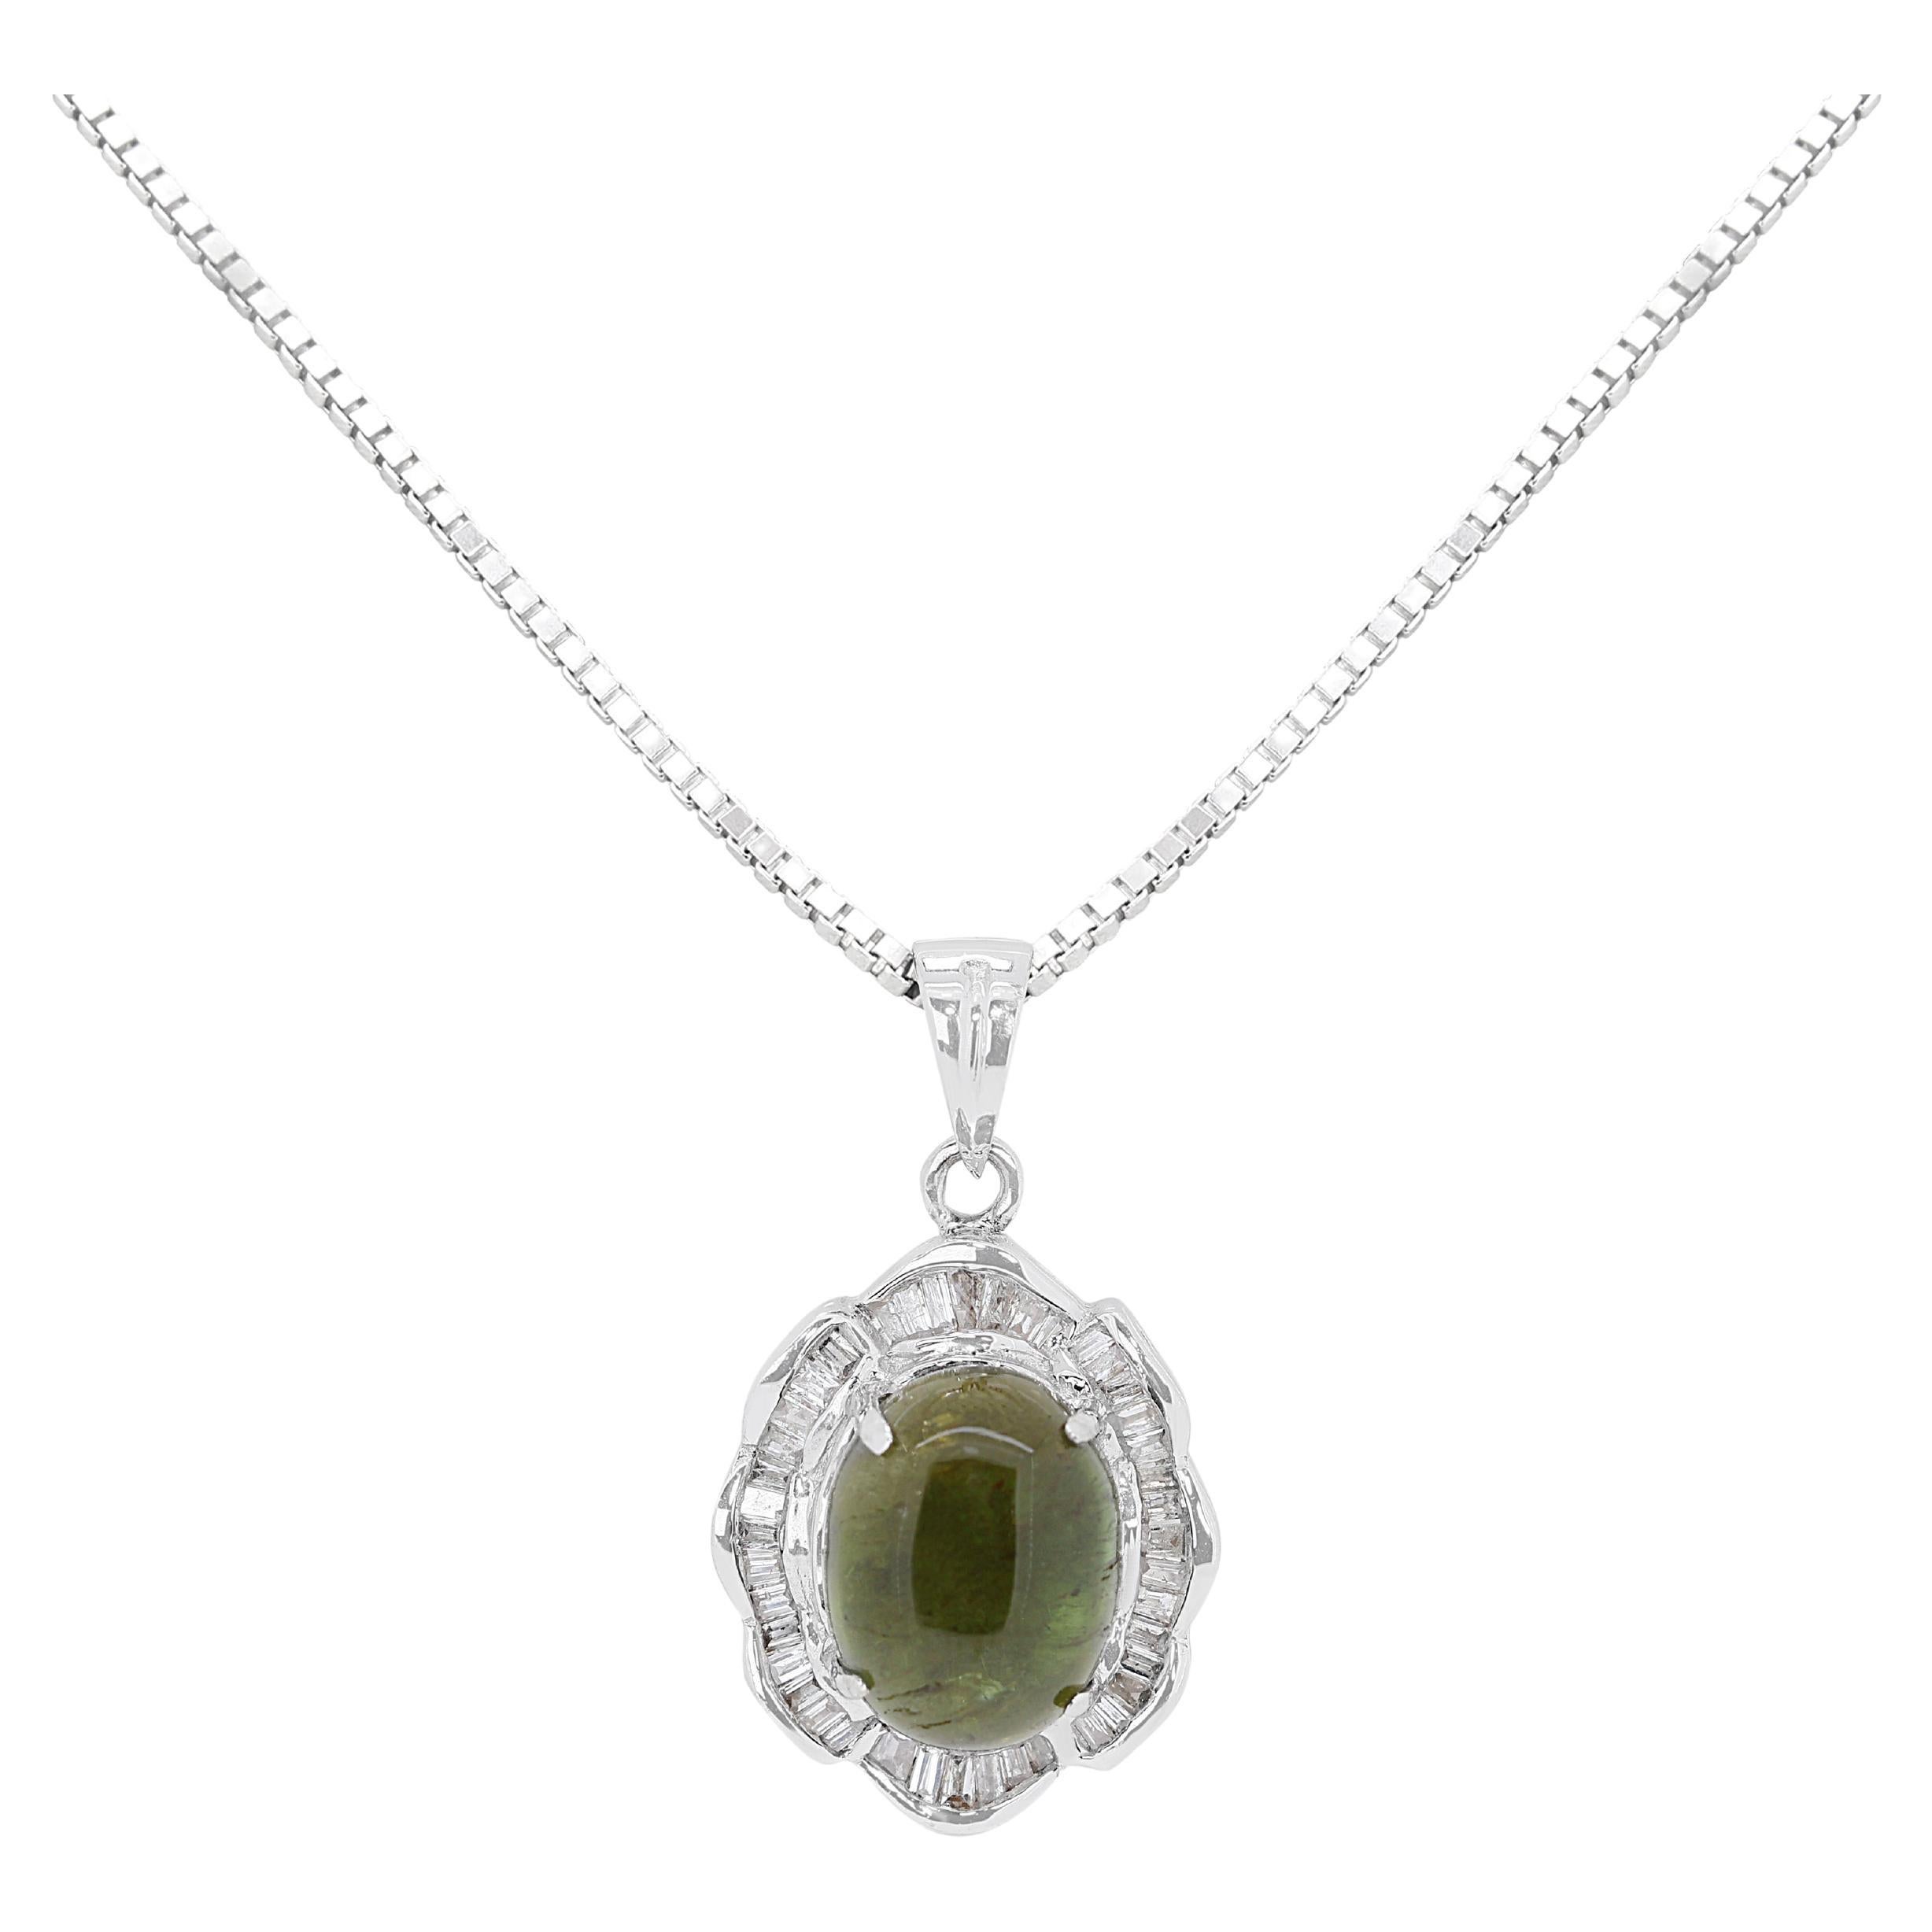 Magnifique pendentif en tourmaline de 2,83 carats avec diamants - (chaîne non incluse)